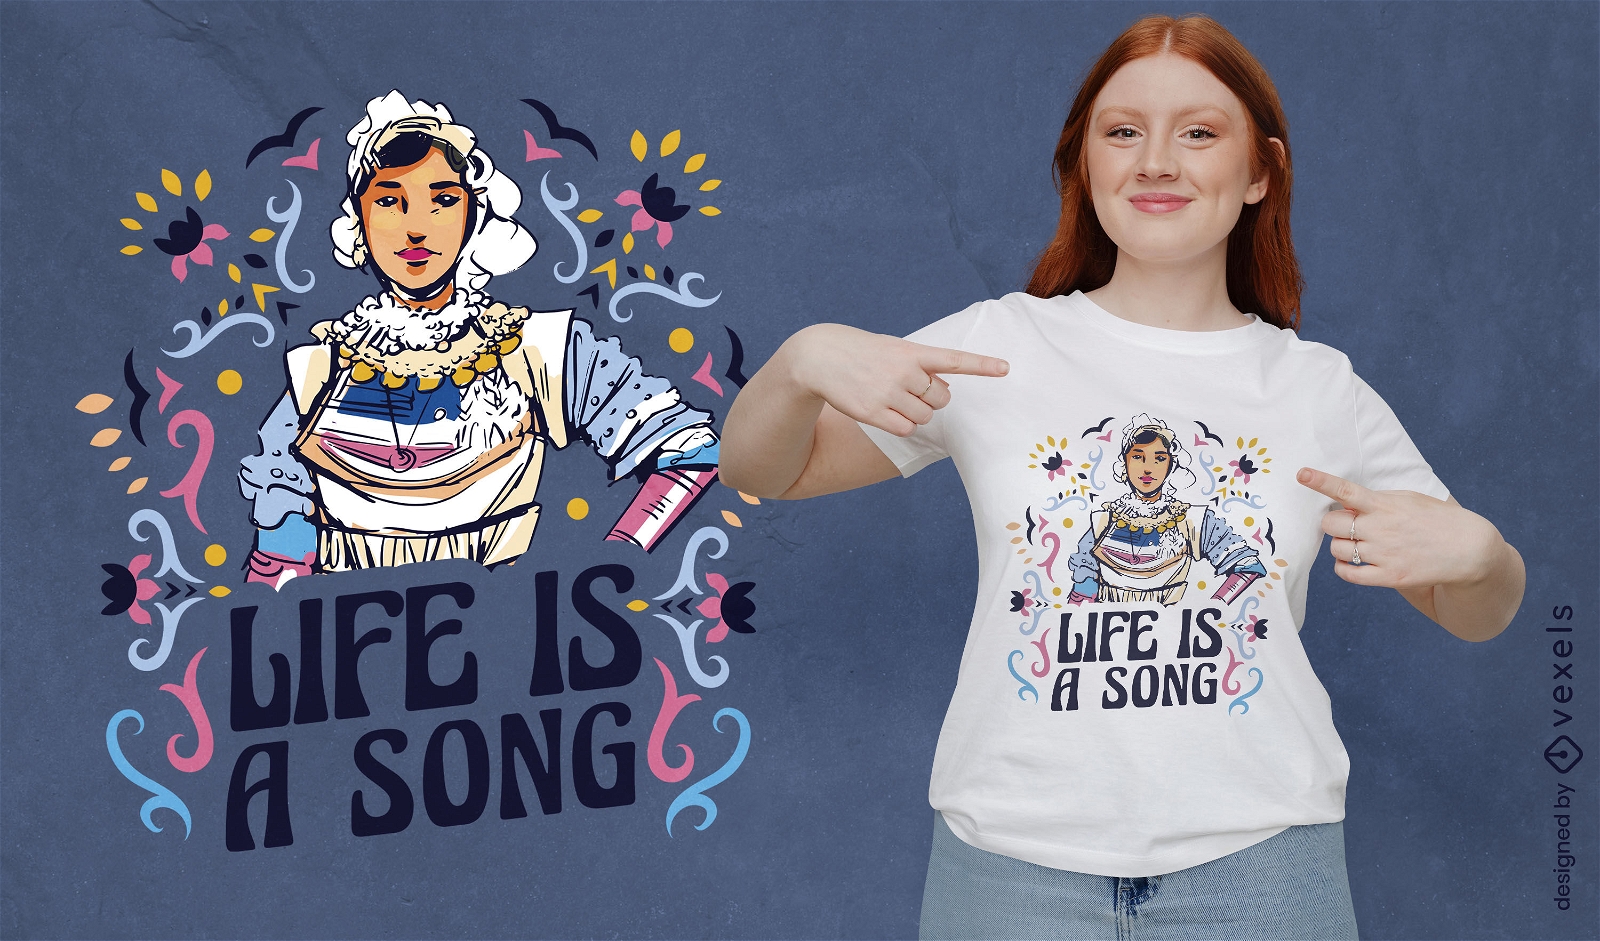 La vida es un diseño de camiseta de mujer canción.